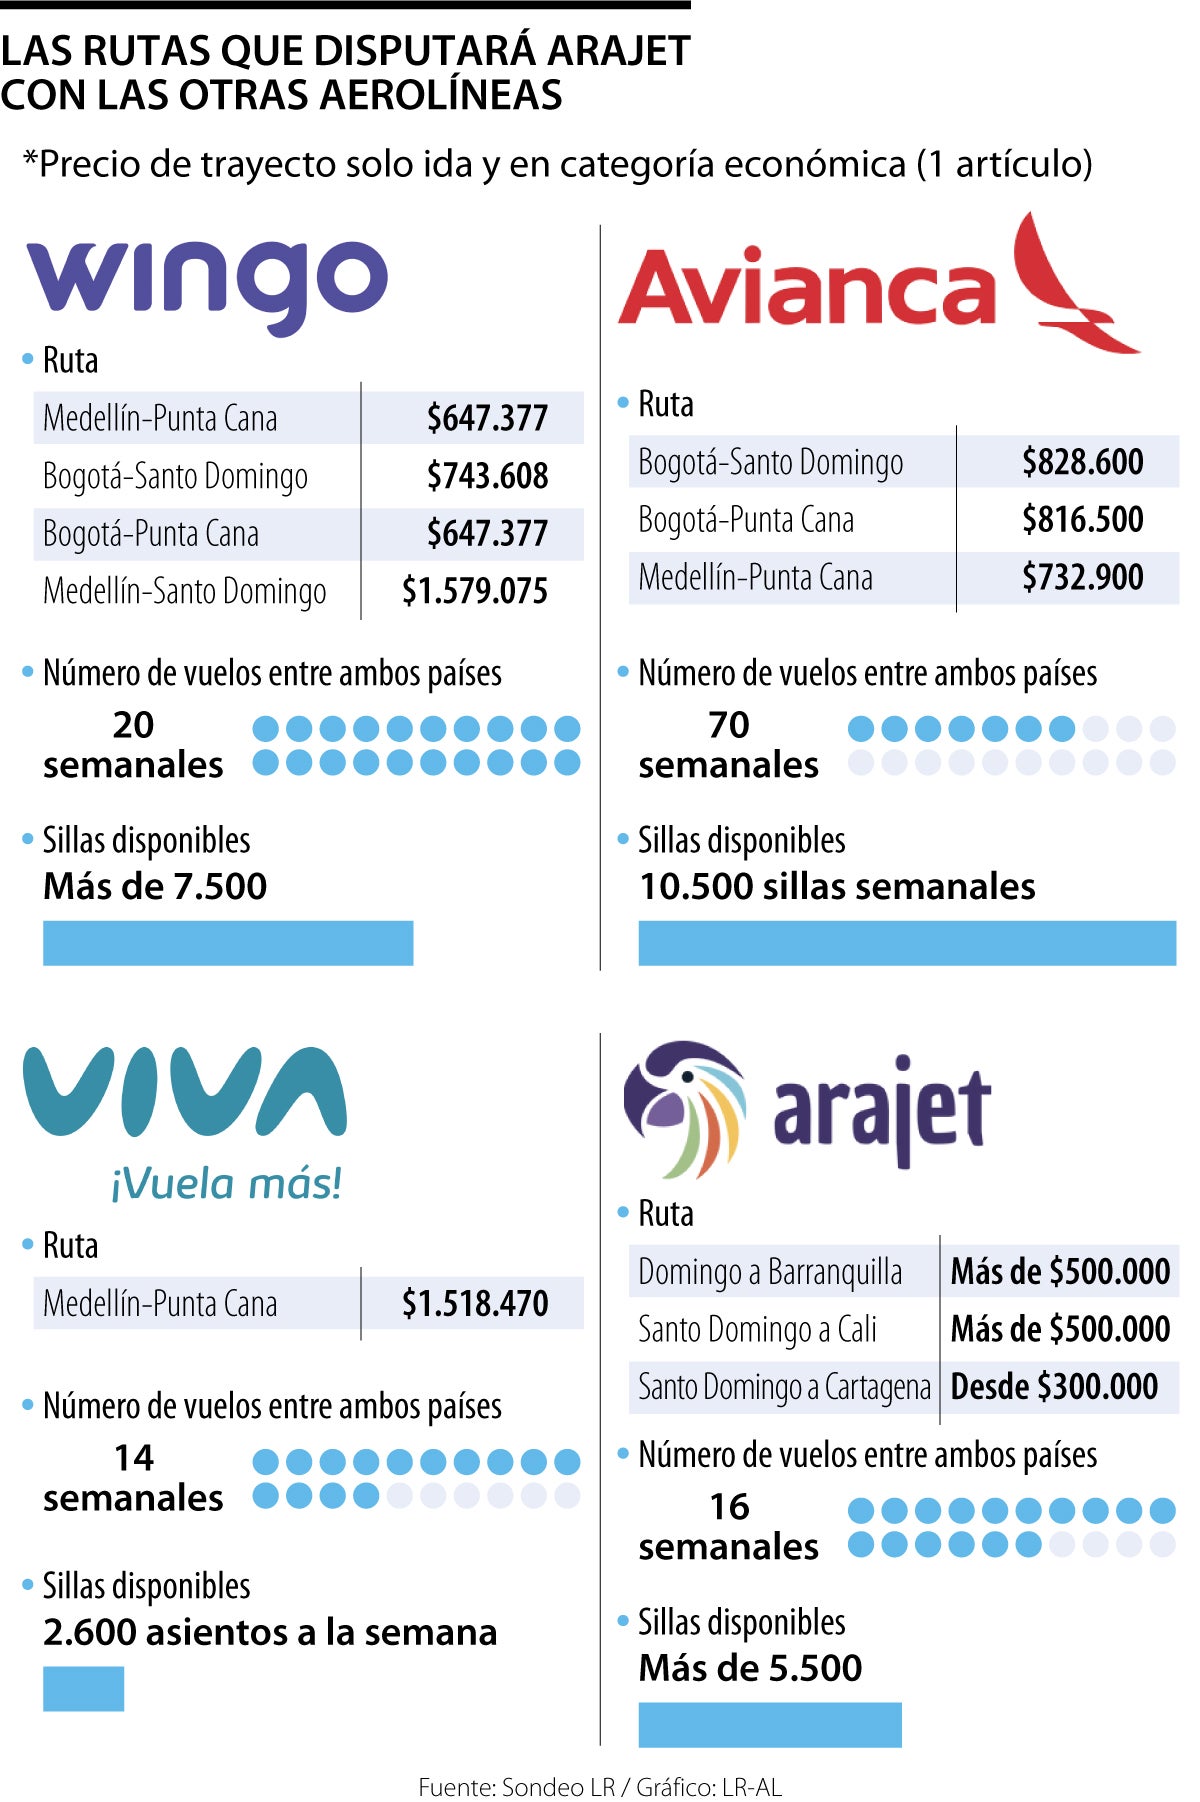 Pulido mini Pensionista Nueva aerolínea Arajet pisa mercado de low cost en ruta caribeña de tres  compañías